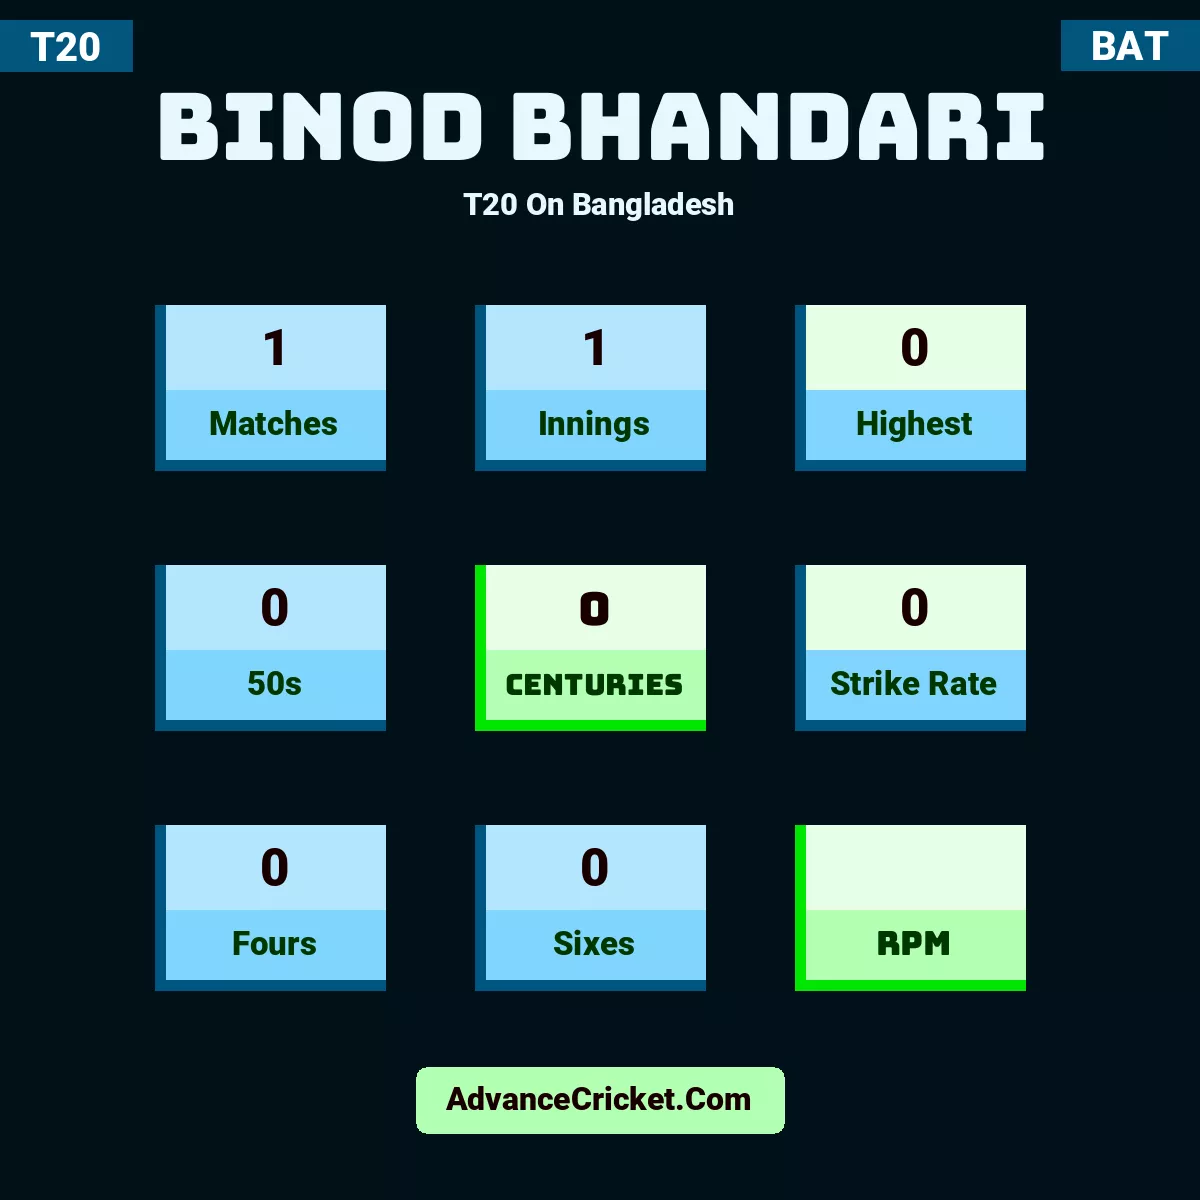 Binod Bhandari T20  On Bangladesh, Binod Bhandari played 1 matches, scored 0 runs as highest, 0 half-centuries, and 0 centuries, with a strike rate of 0. B.Bhandari hit 0 fours and 0 sixes.